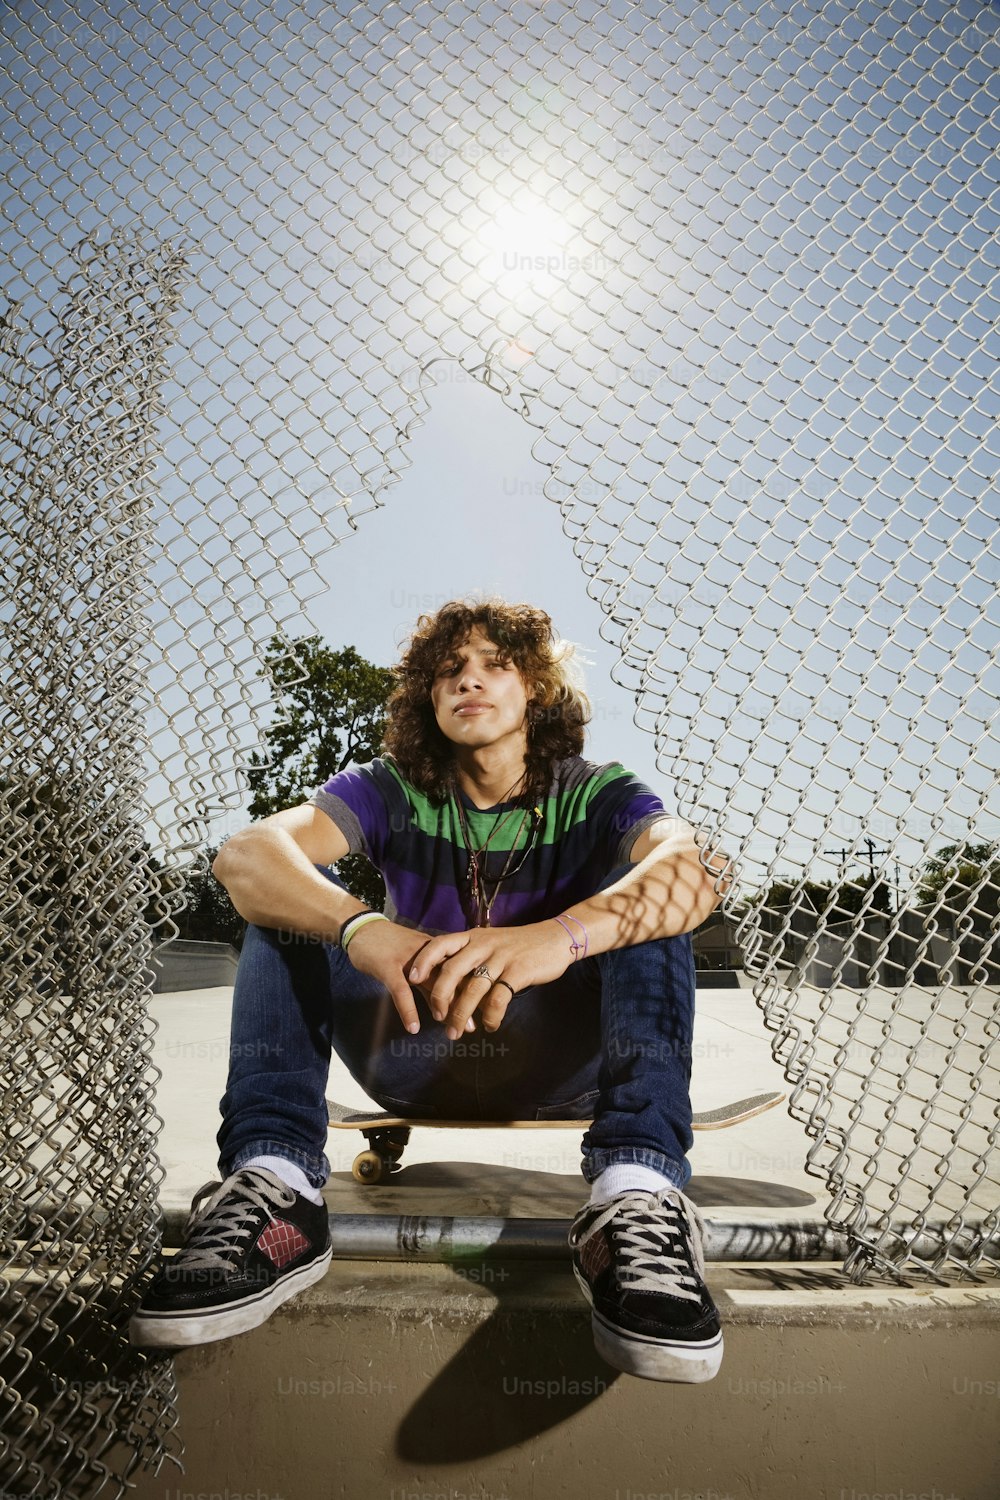 Un uomo seduto su uno skateboard di fronte a una recinzione